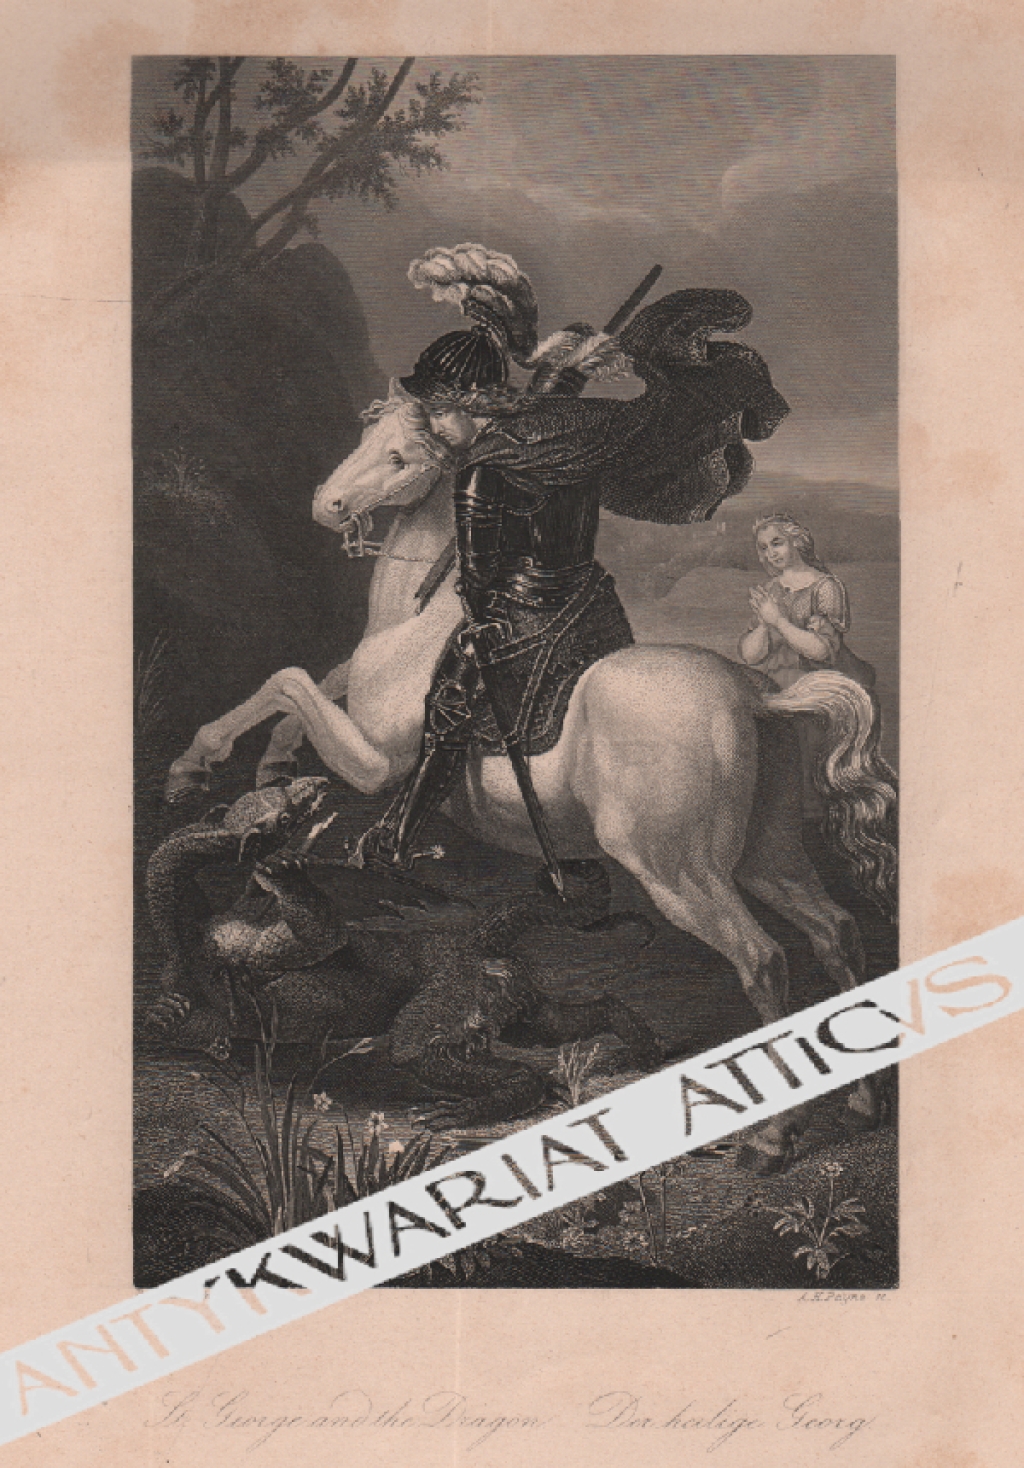 [rycina, ok. 1860] [Św. Jerzy walczący ze smokiem] St. George and the Dragon. Der heilige Georg